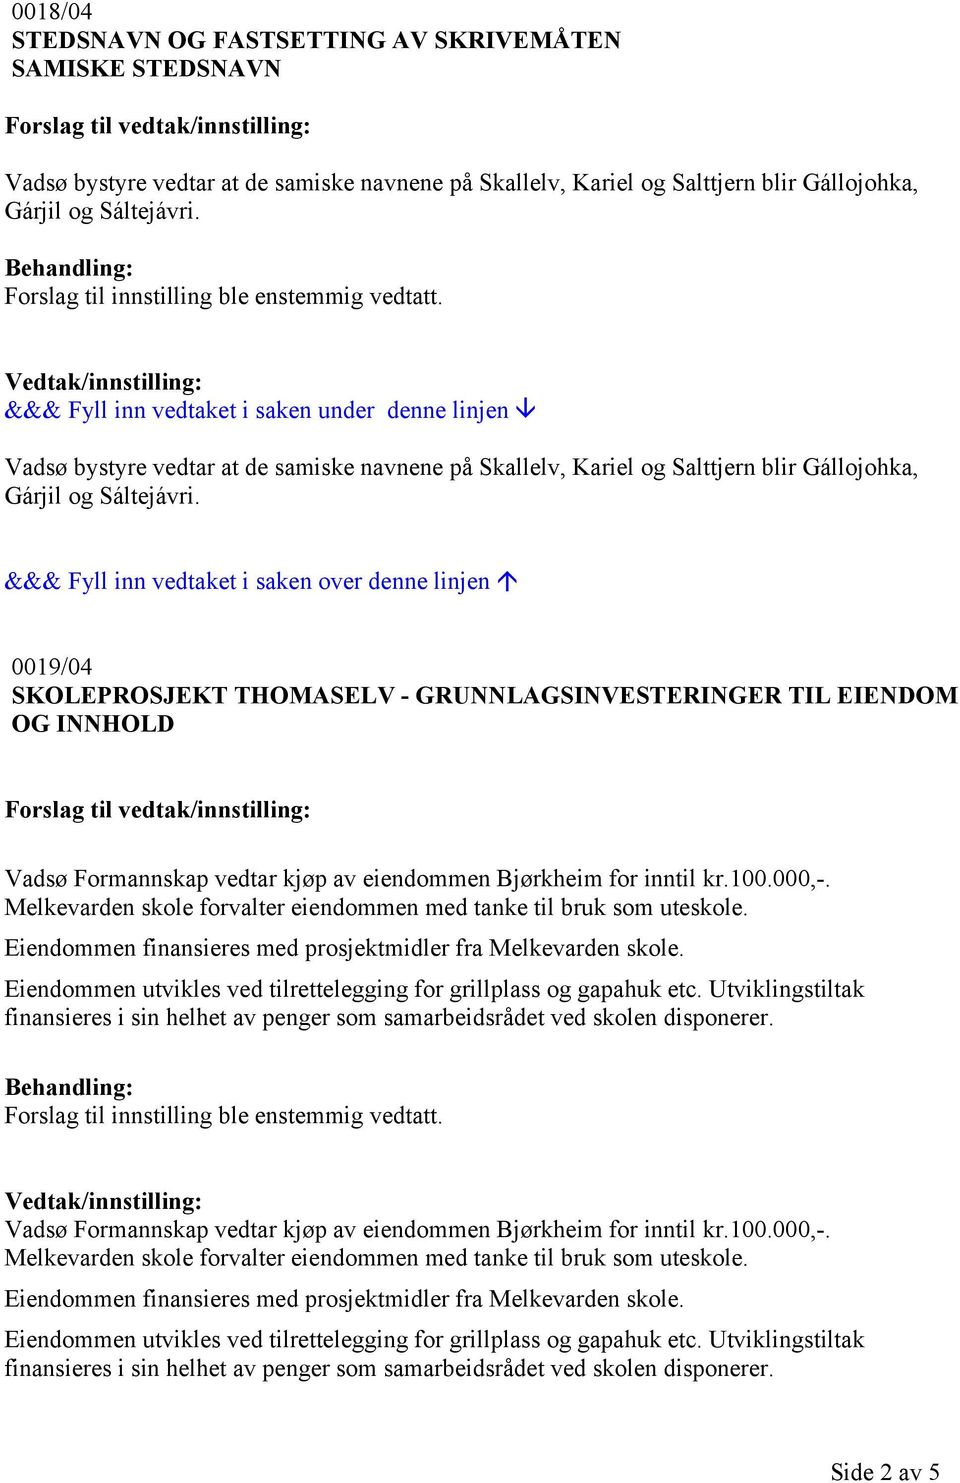 &&& Fyll inn vedtaket i saken over denne linjen 0019/04 SKOLEPROSJEKT THOMASELV - GRUNNLAGSINVESTERINGER TIL EIENDOM OG INNHOLD Vadsø Formannskap vedtar kjøp av eiendommen Bjørkheim for inntil kr.100.